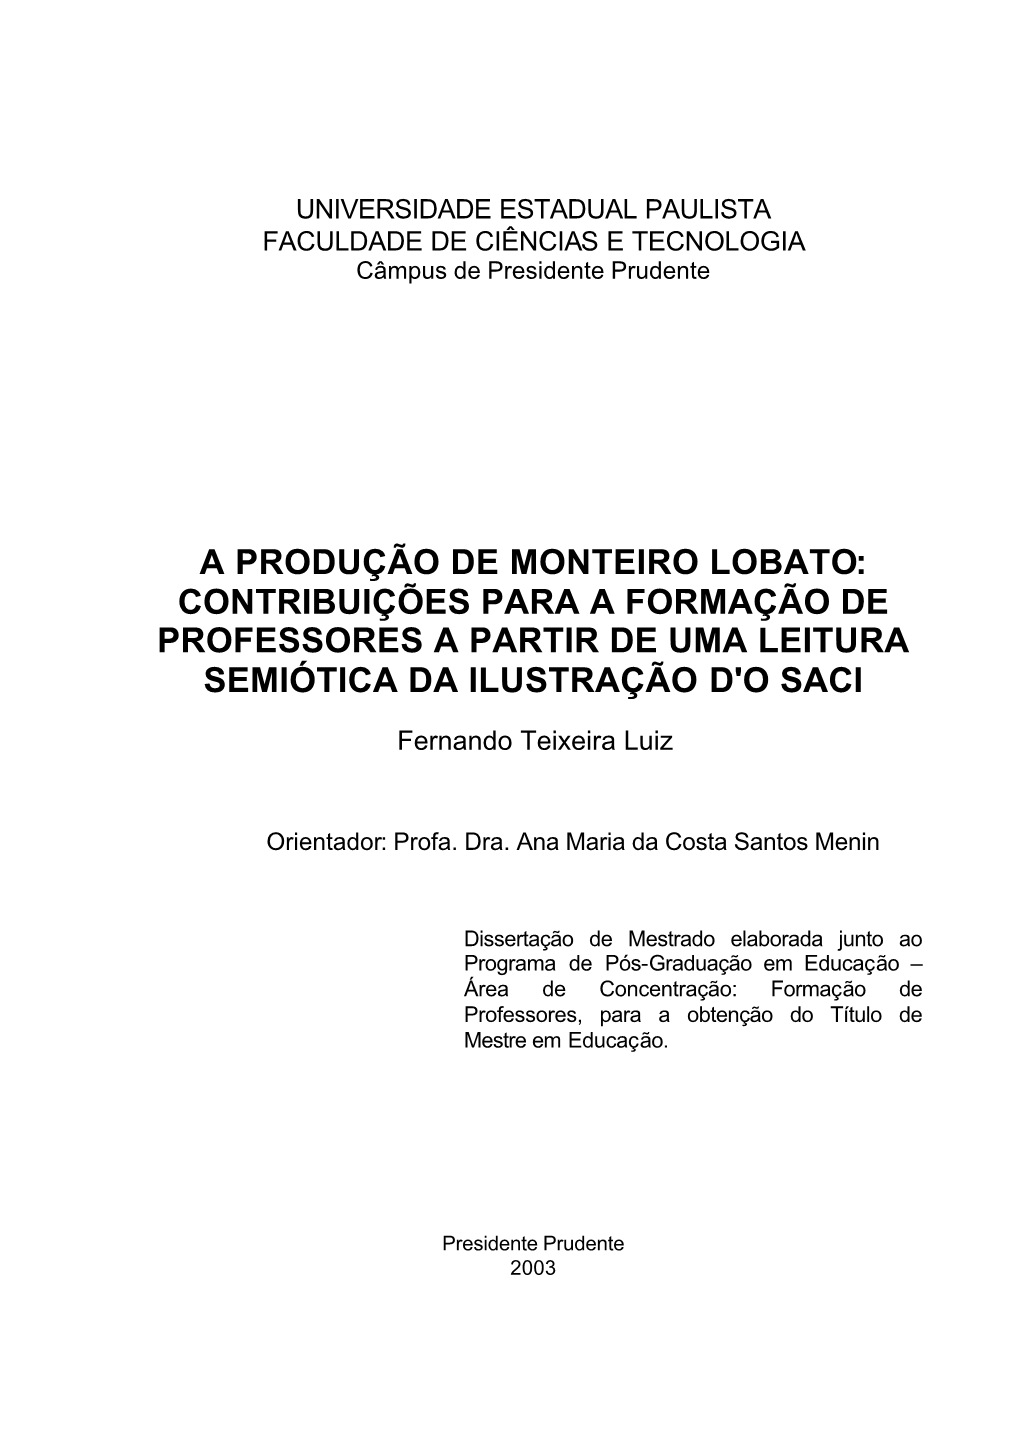 A Produção De Monteiro Lobato: Contribuições Para a Formação De Professores a Partir De Uma Leitura Semiótica Da Ilustração D'o Saci